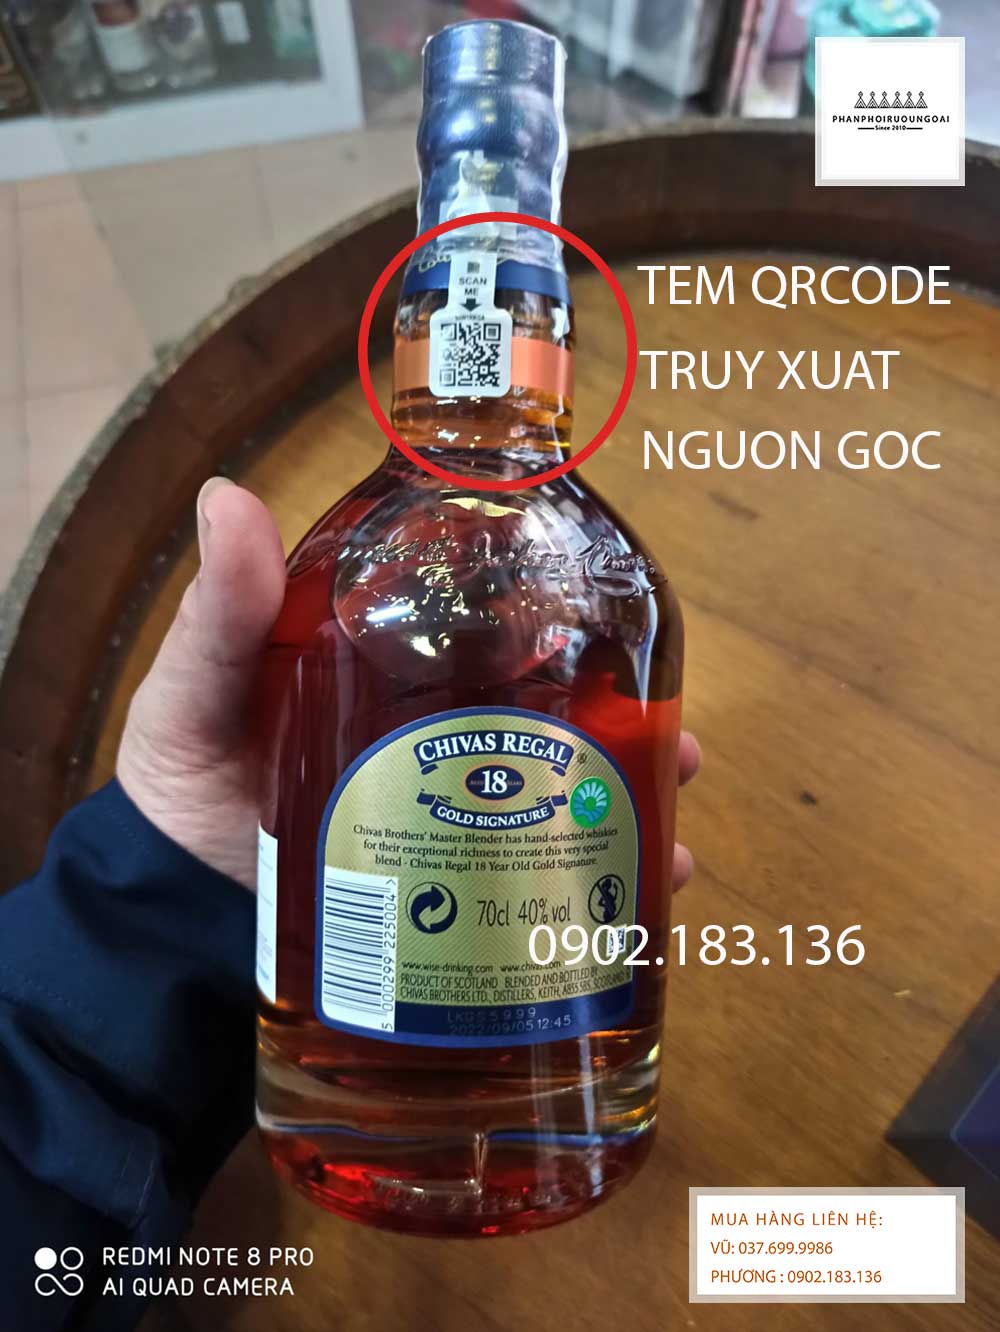 Tem QrCode giúp truy xuất nguồn gốc sản phâm rượu Chivas 18 